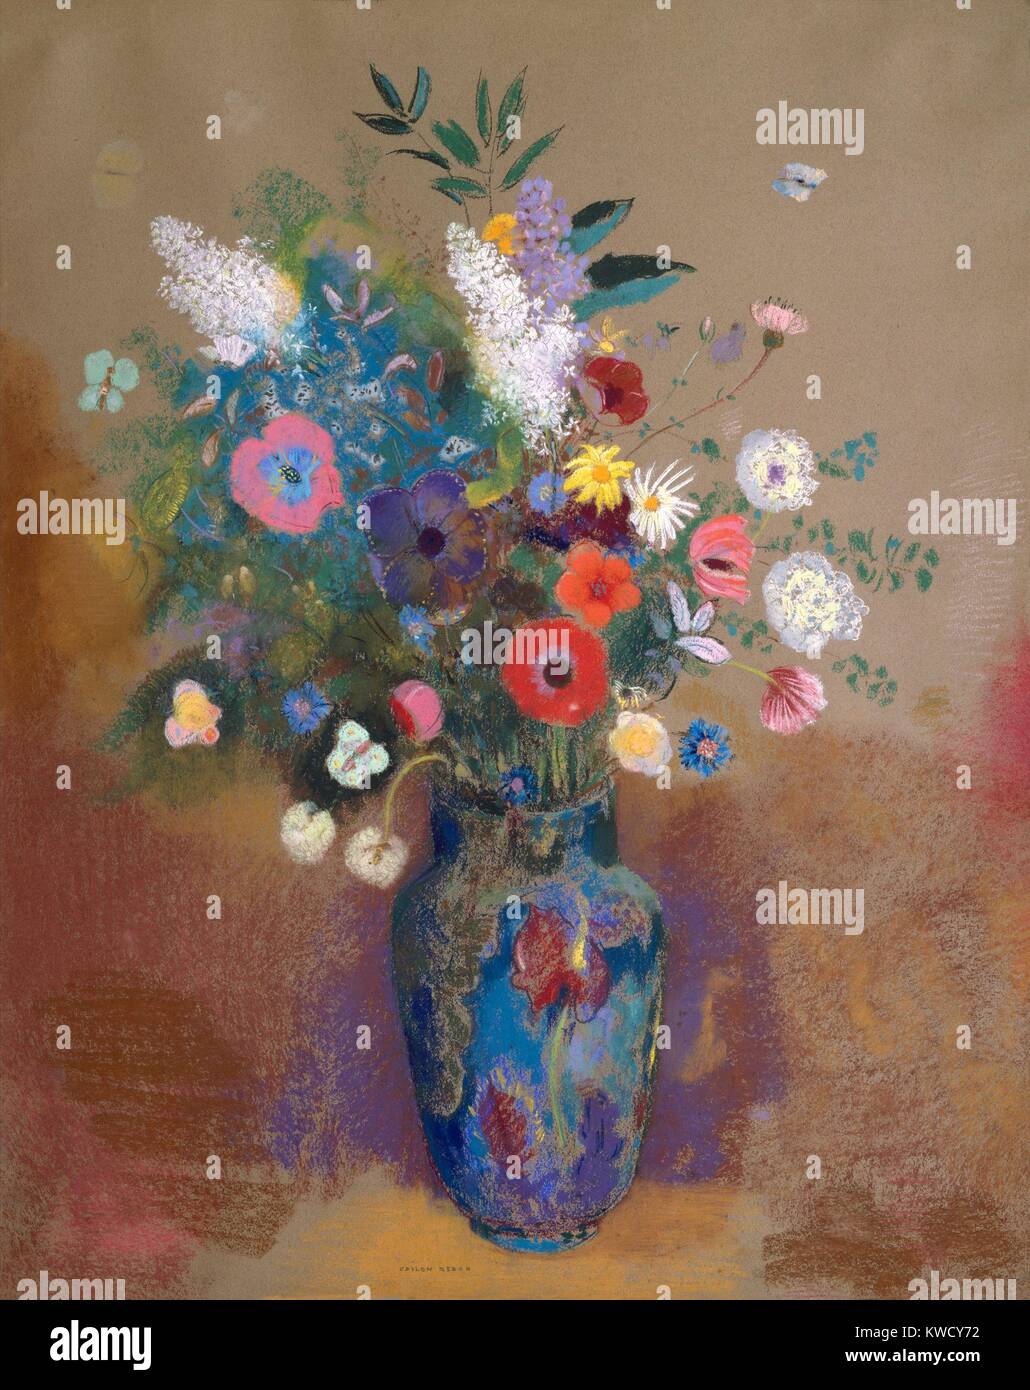 Blumenstrauß, von Odilon Redon, 1905, französischen Symbolisten zeichnen, Pastell auf Papier. Erstellt, wenn der Künstler 65 Jahre alt wurde, wird dieser immer noch Leben kombiniert eine Vielzahl Blumen in einer Vase in einem undefinierten Raum (BSLOC 2017 5 134) Stockfoto